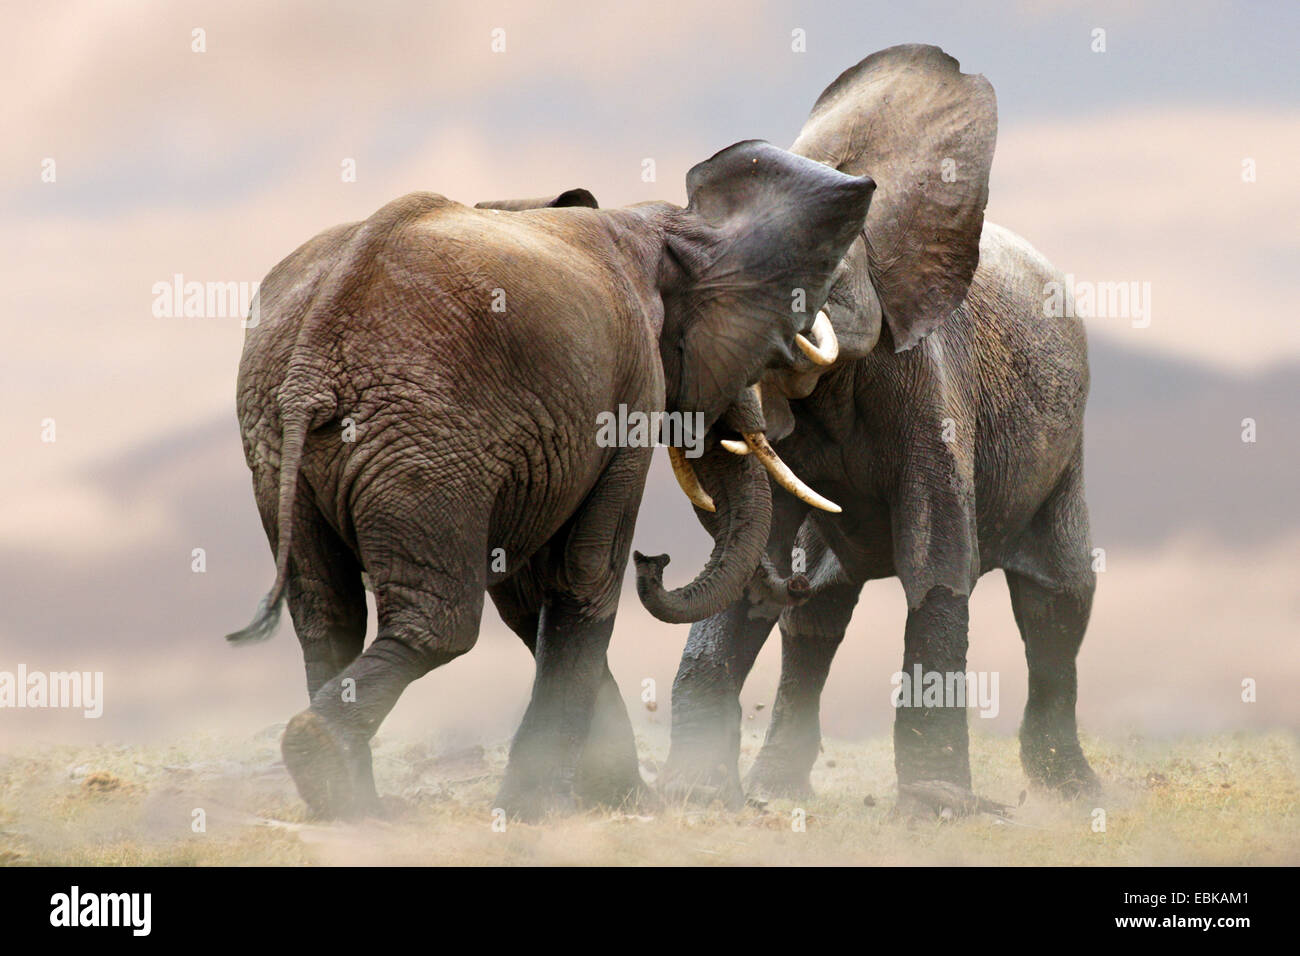 Elefante africano (Loxodonta africana), due elefanti scuffling insieme, Kenya, Amboseli National Park Foto Stock